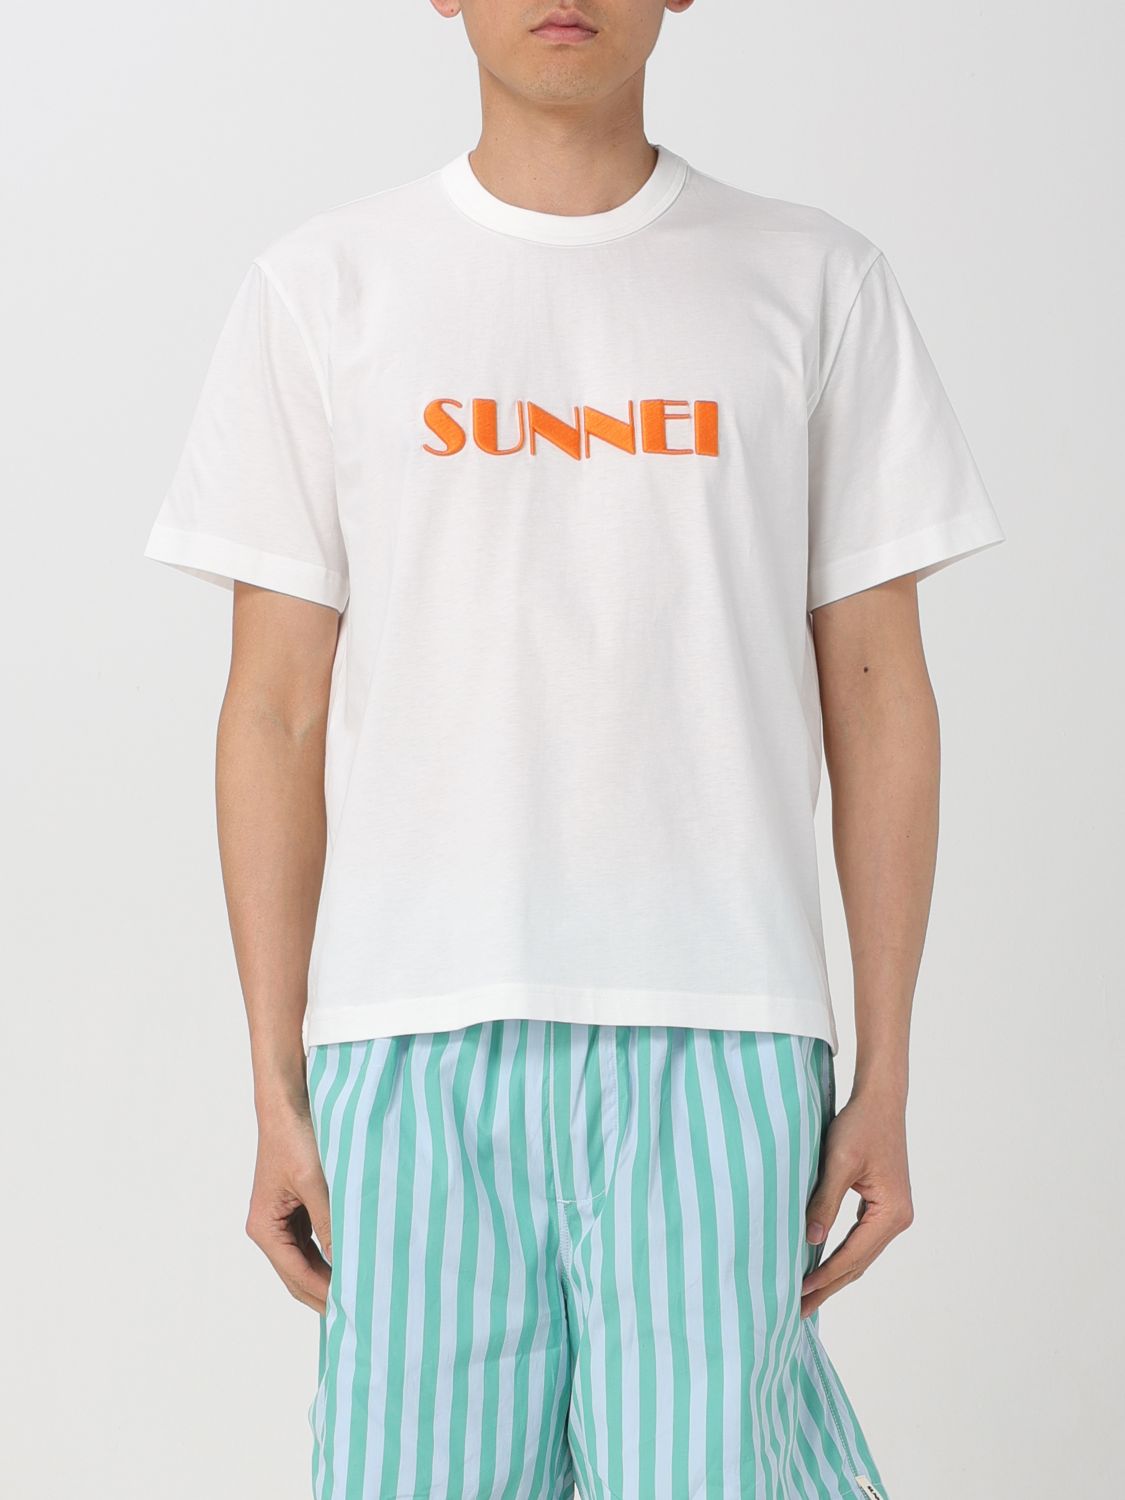 Sunnei T-shirt  Men Color White